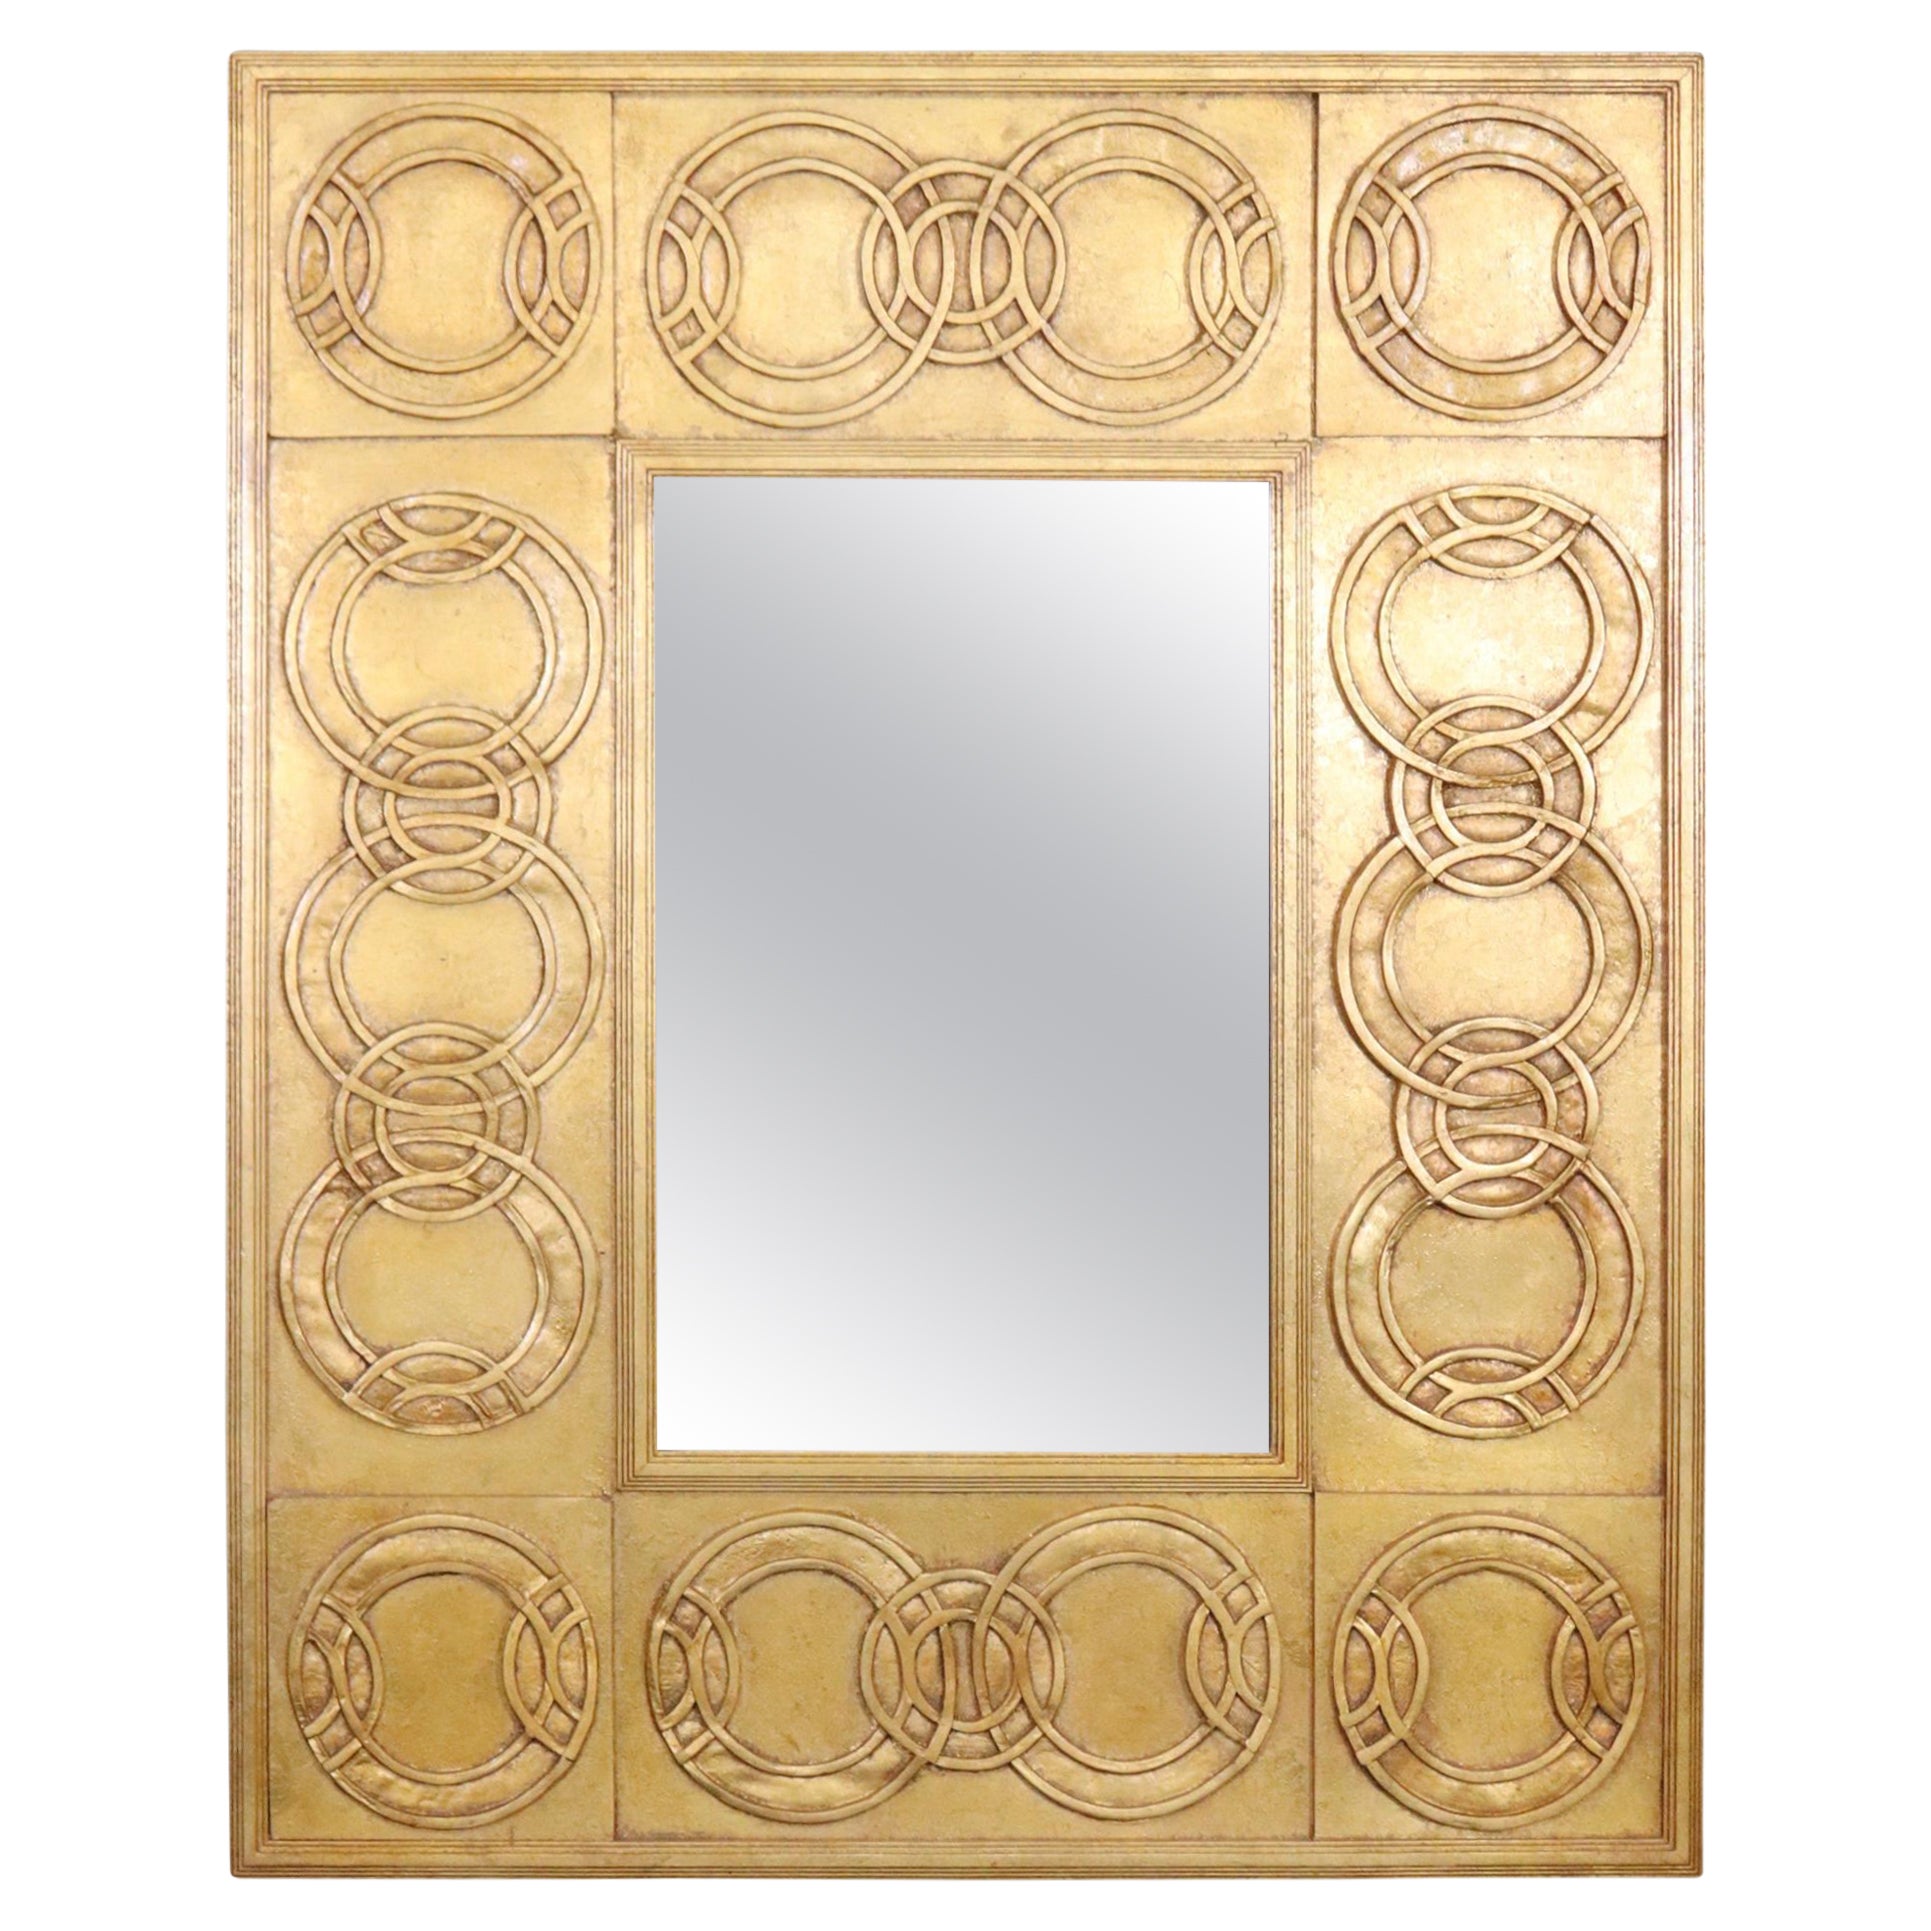 Französisch Directoire Stil Gold vergoldet Rechteck Wand hängenden Spiegel